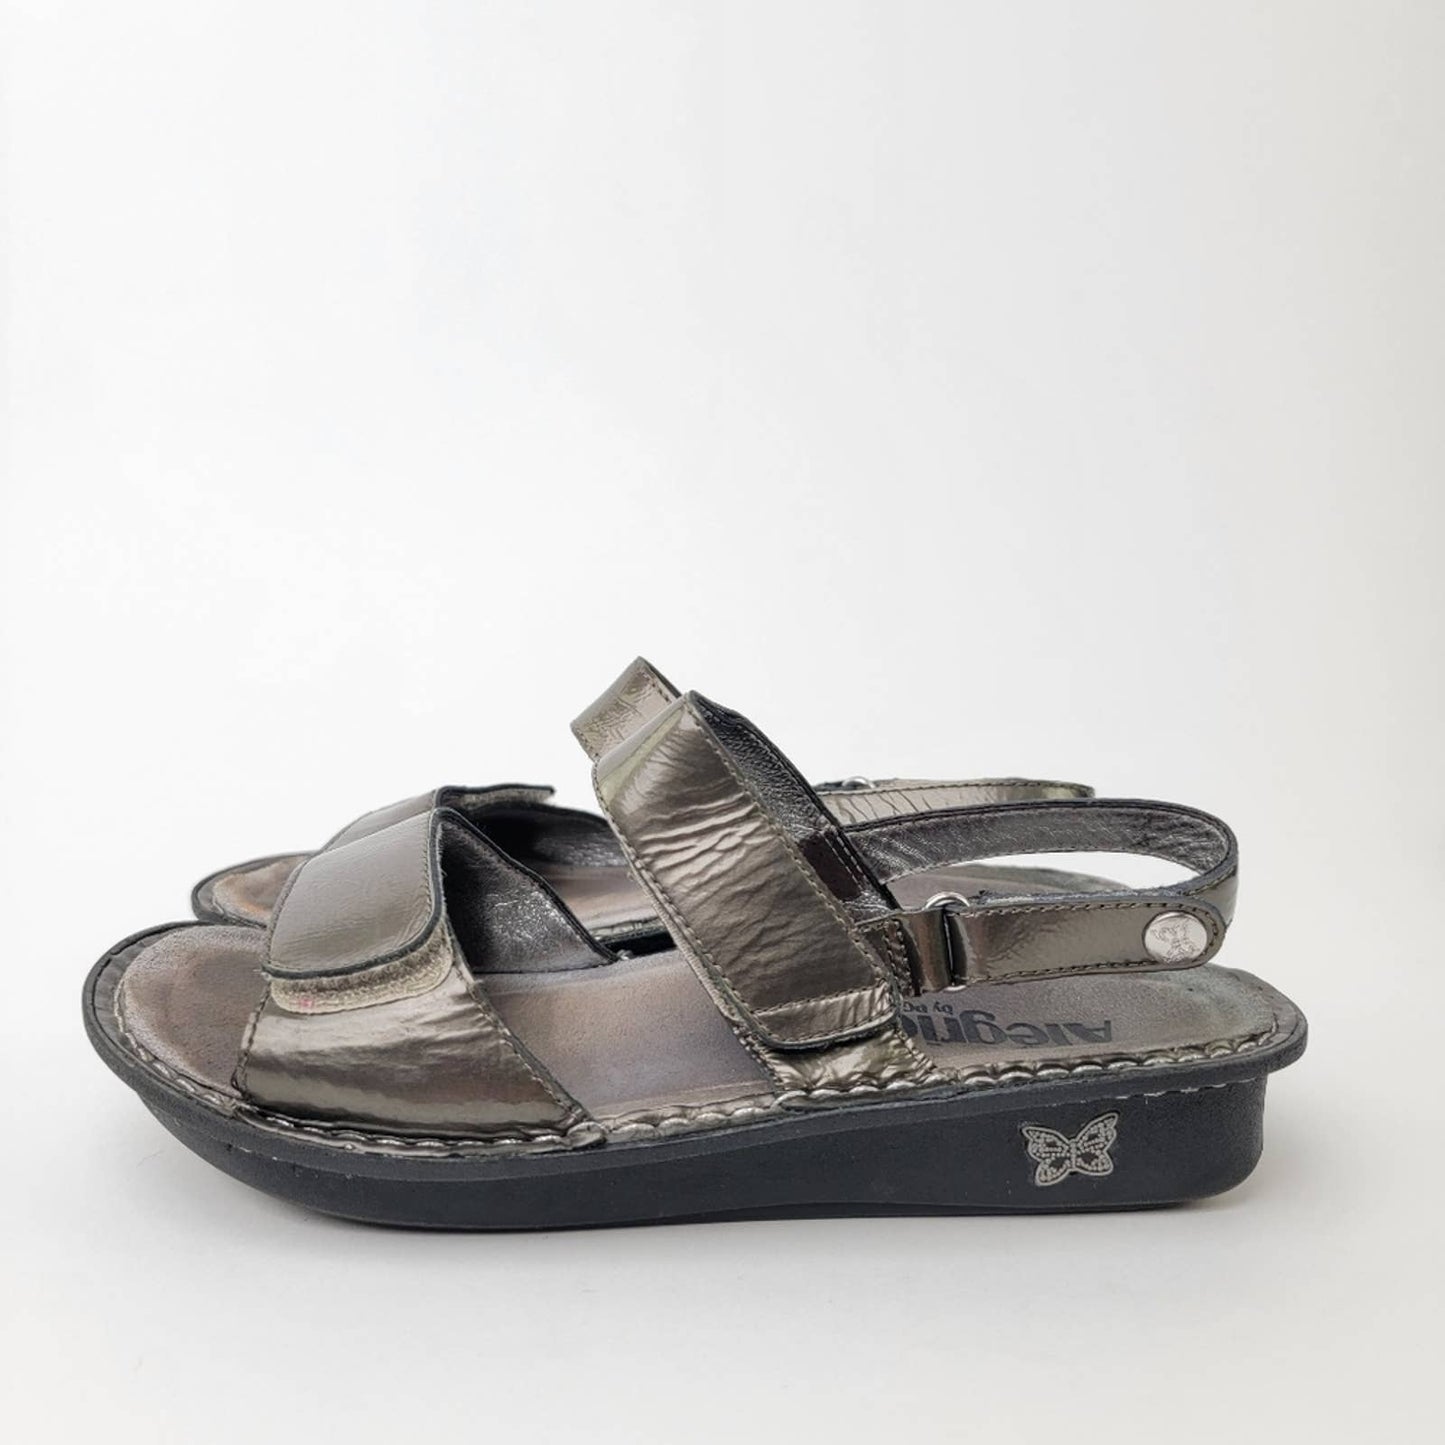 Alegria Verona Chrome Leather Casual Slide Slip On Loafer Platform Sandals - 7